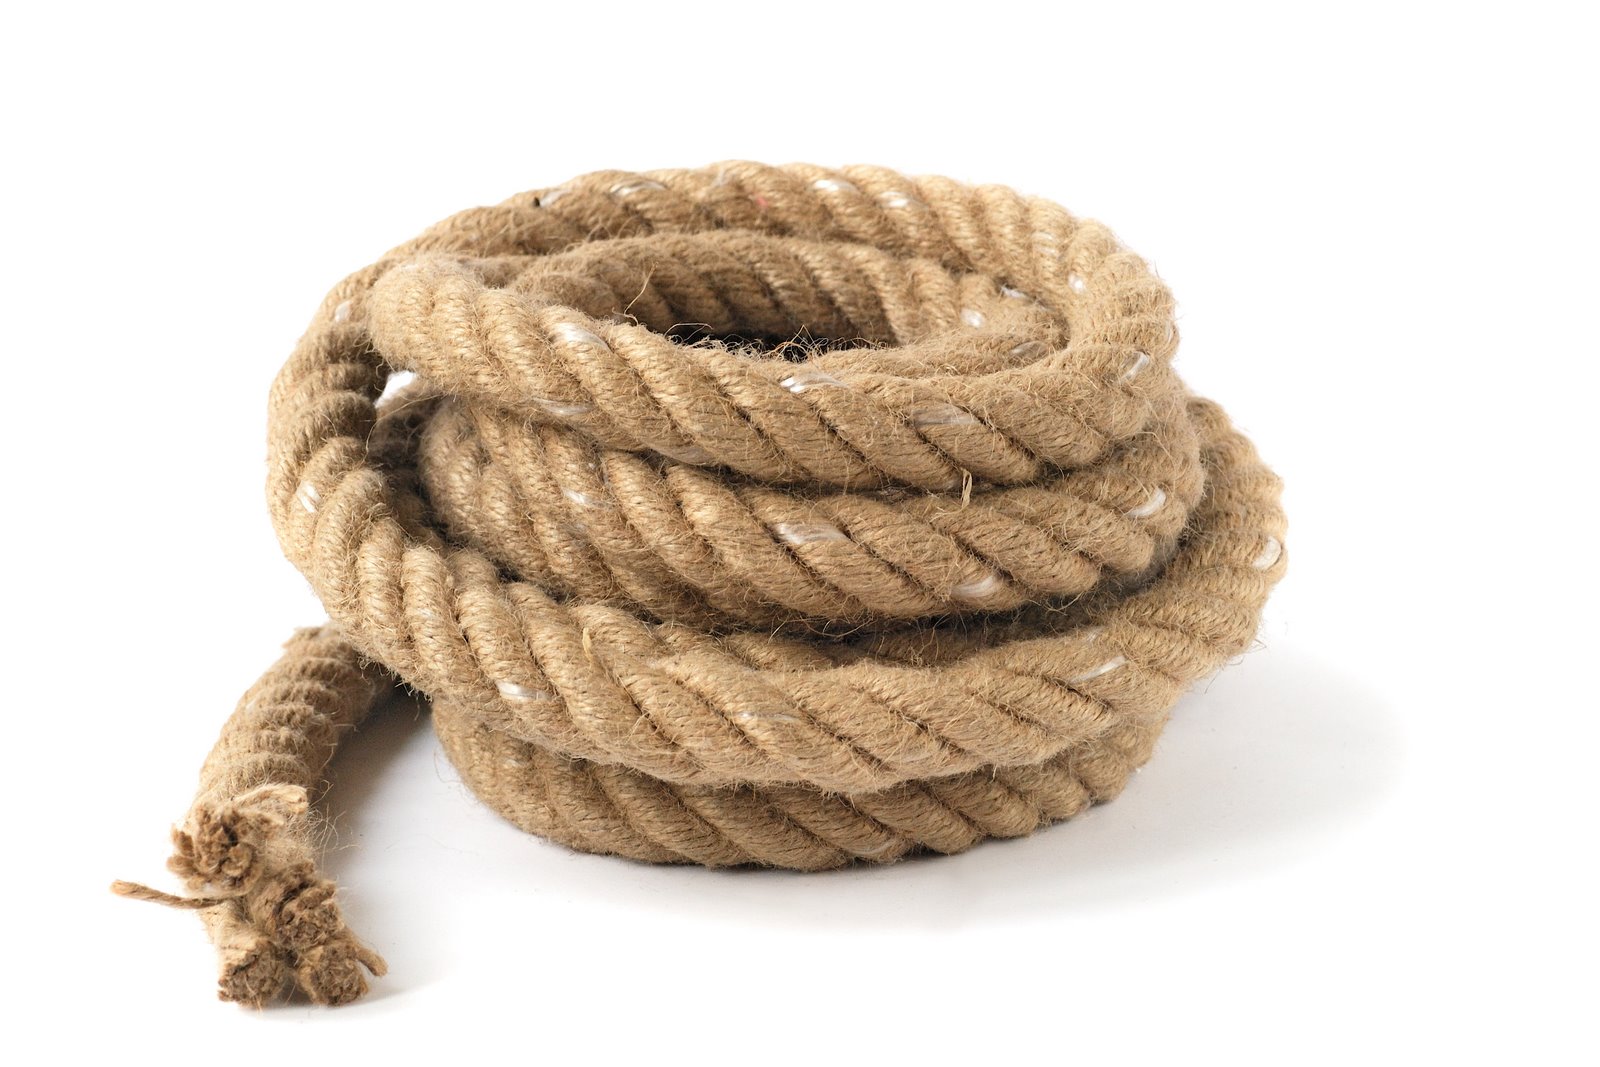 tie rope